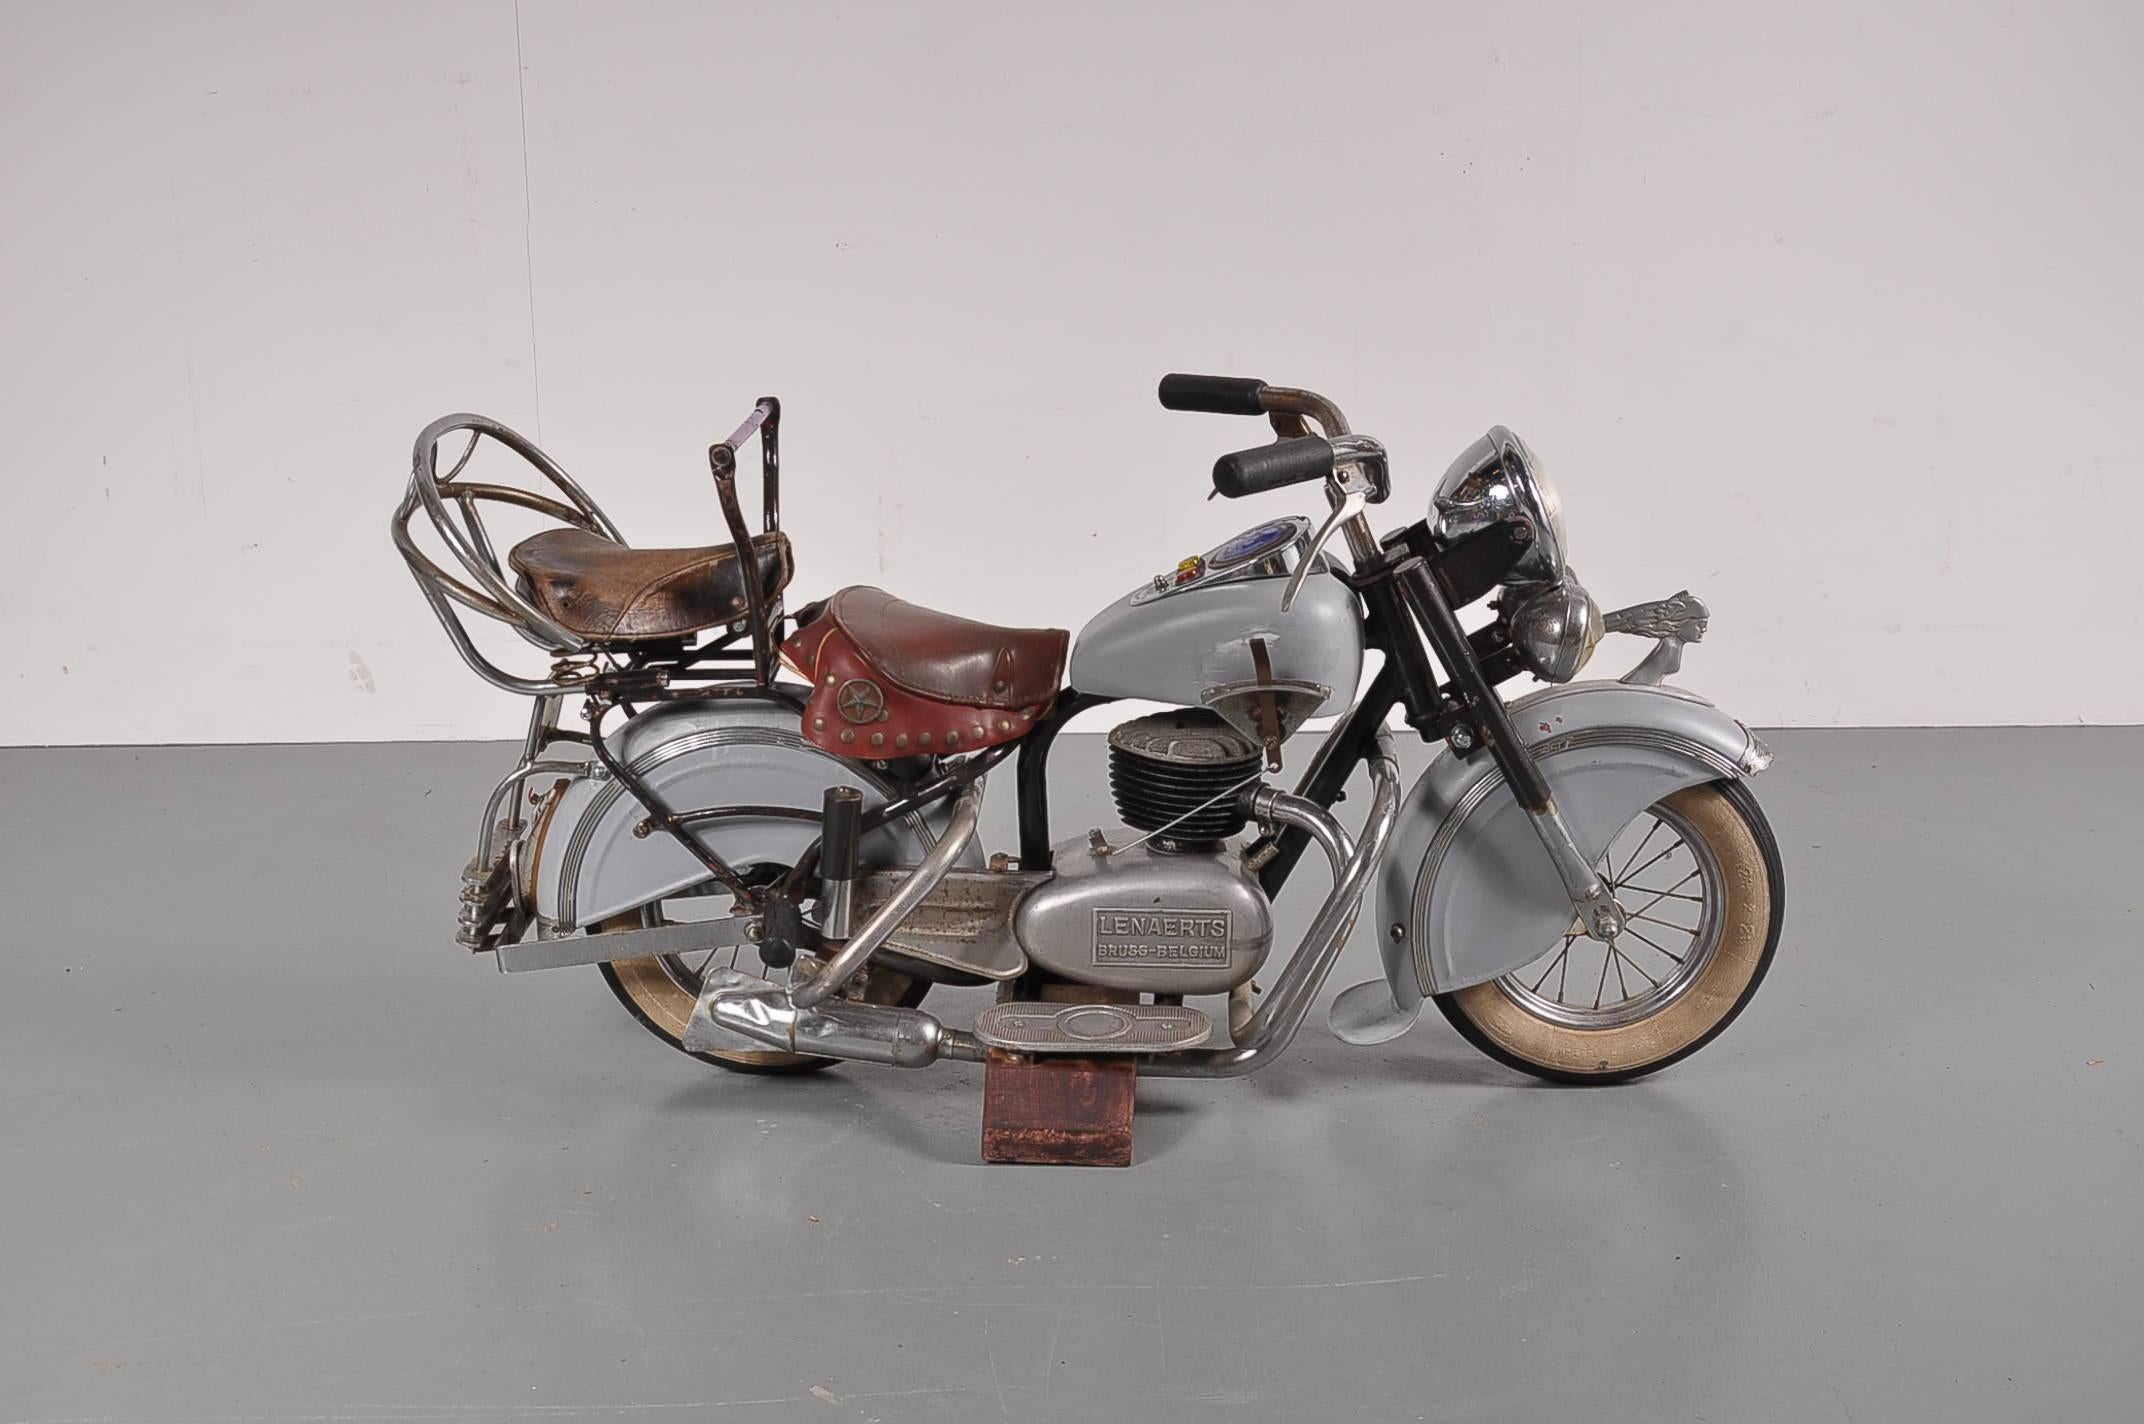 Ein sehr seltenes Karussell-Motorrad, hergestellt von Lenaerts, ca. 1950.

Dieses auffällige Modell befindet sich in schönem Originalzustand. Es ist aus hochwertigem Metall in einer schönen grauen Farbe, mit einem braunen Ledersitz und einem roten